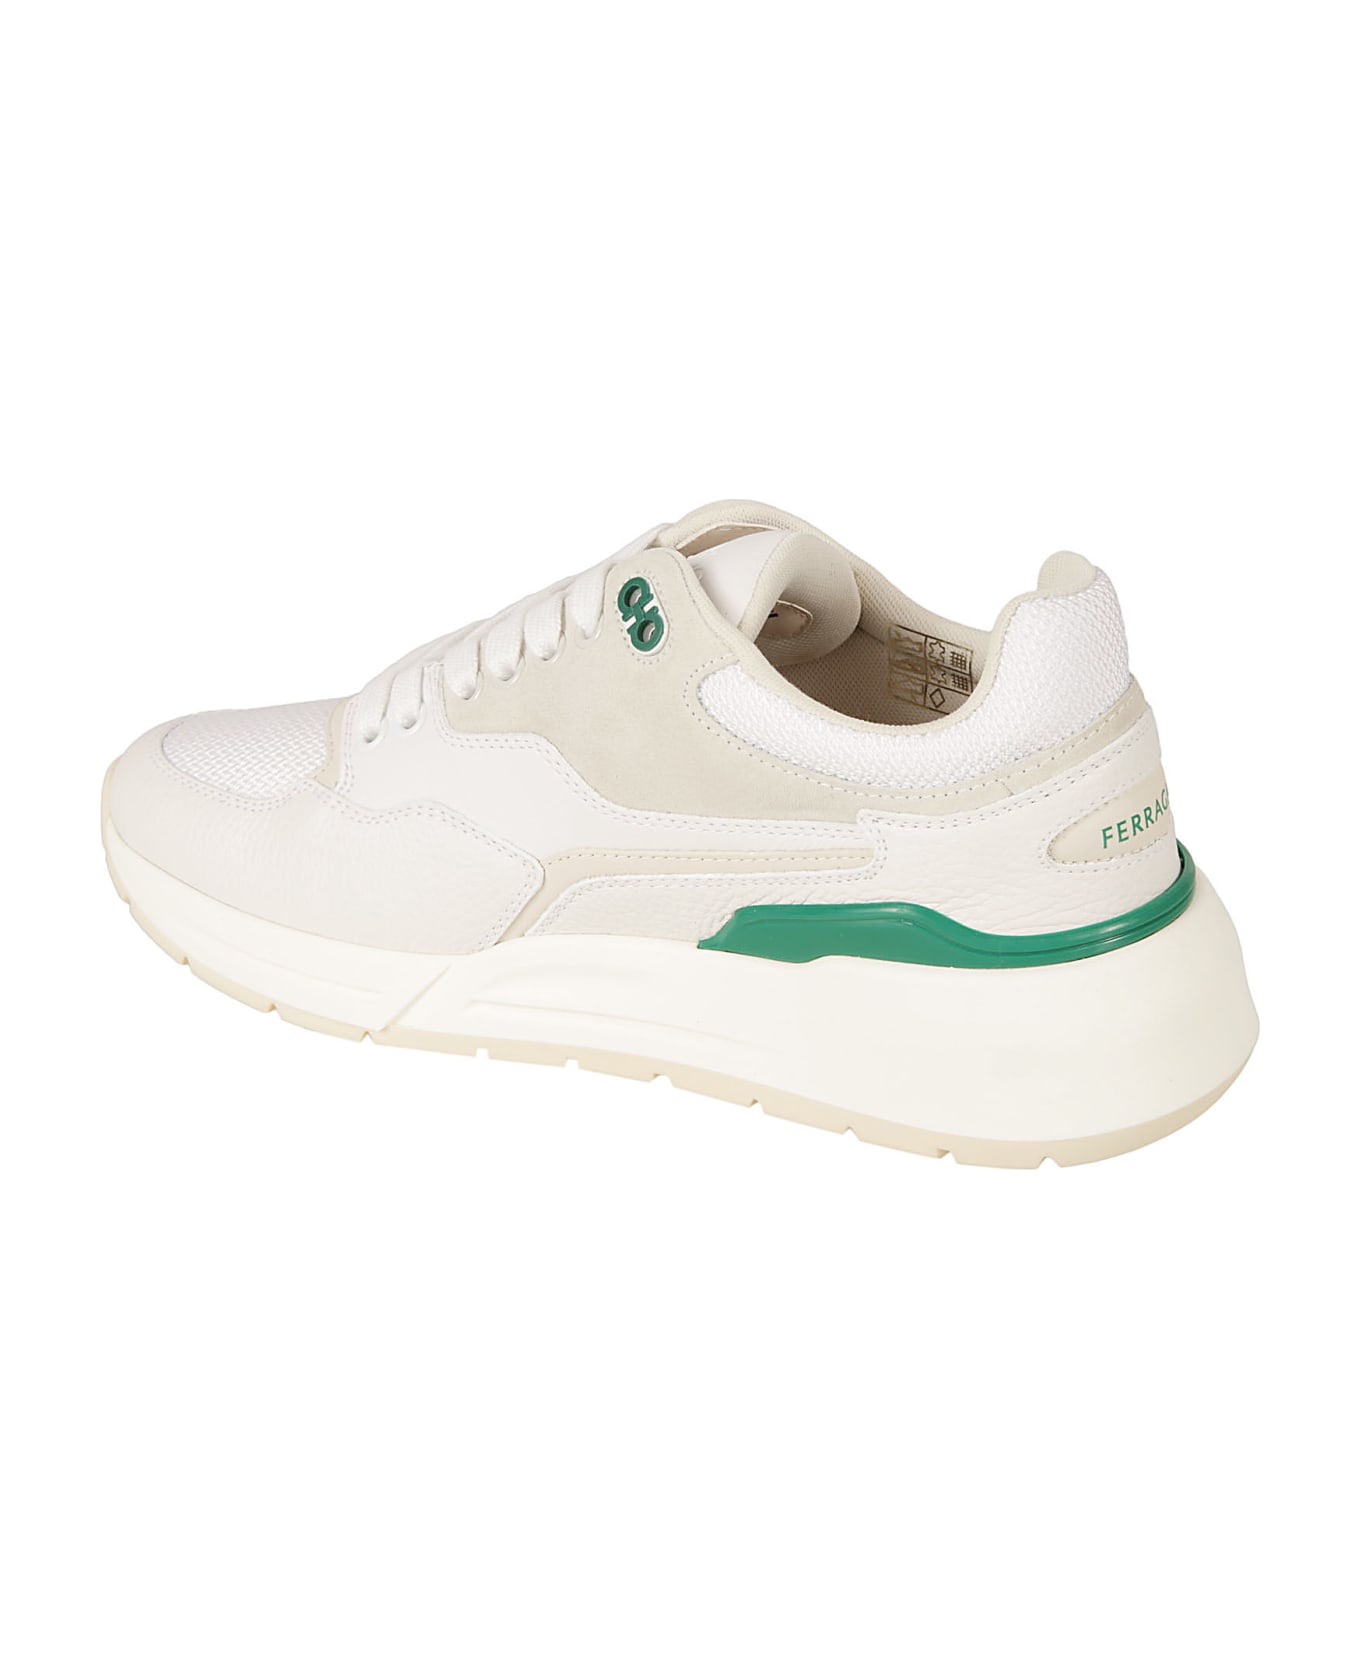 Ferragamo Cosma Low Sneakers - White